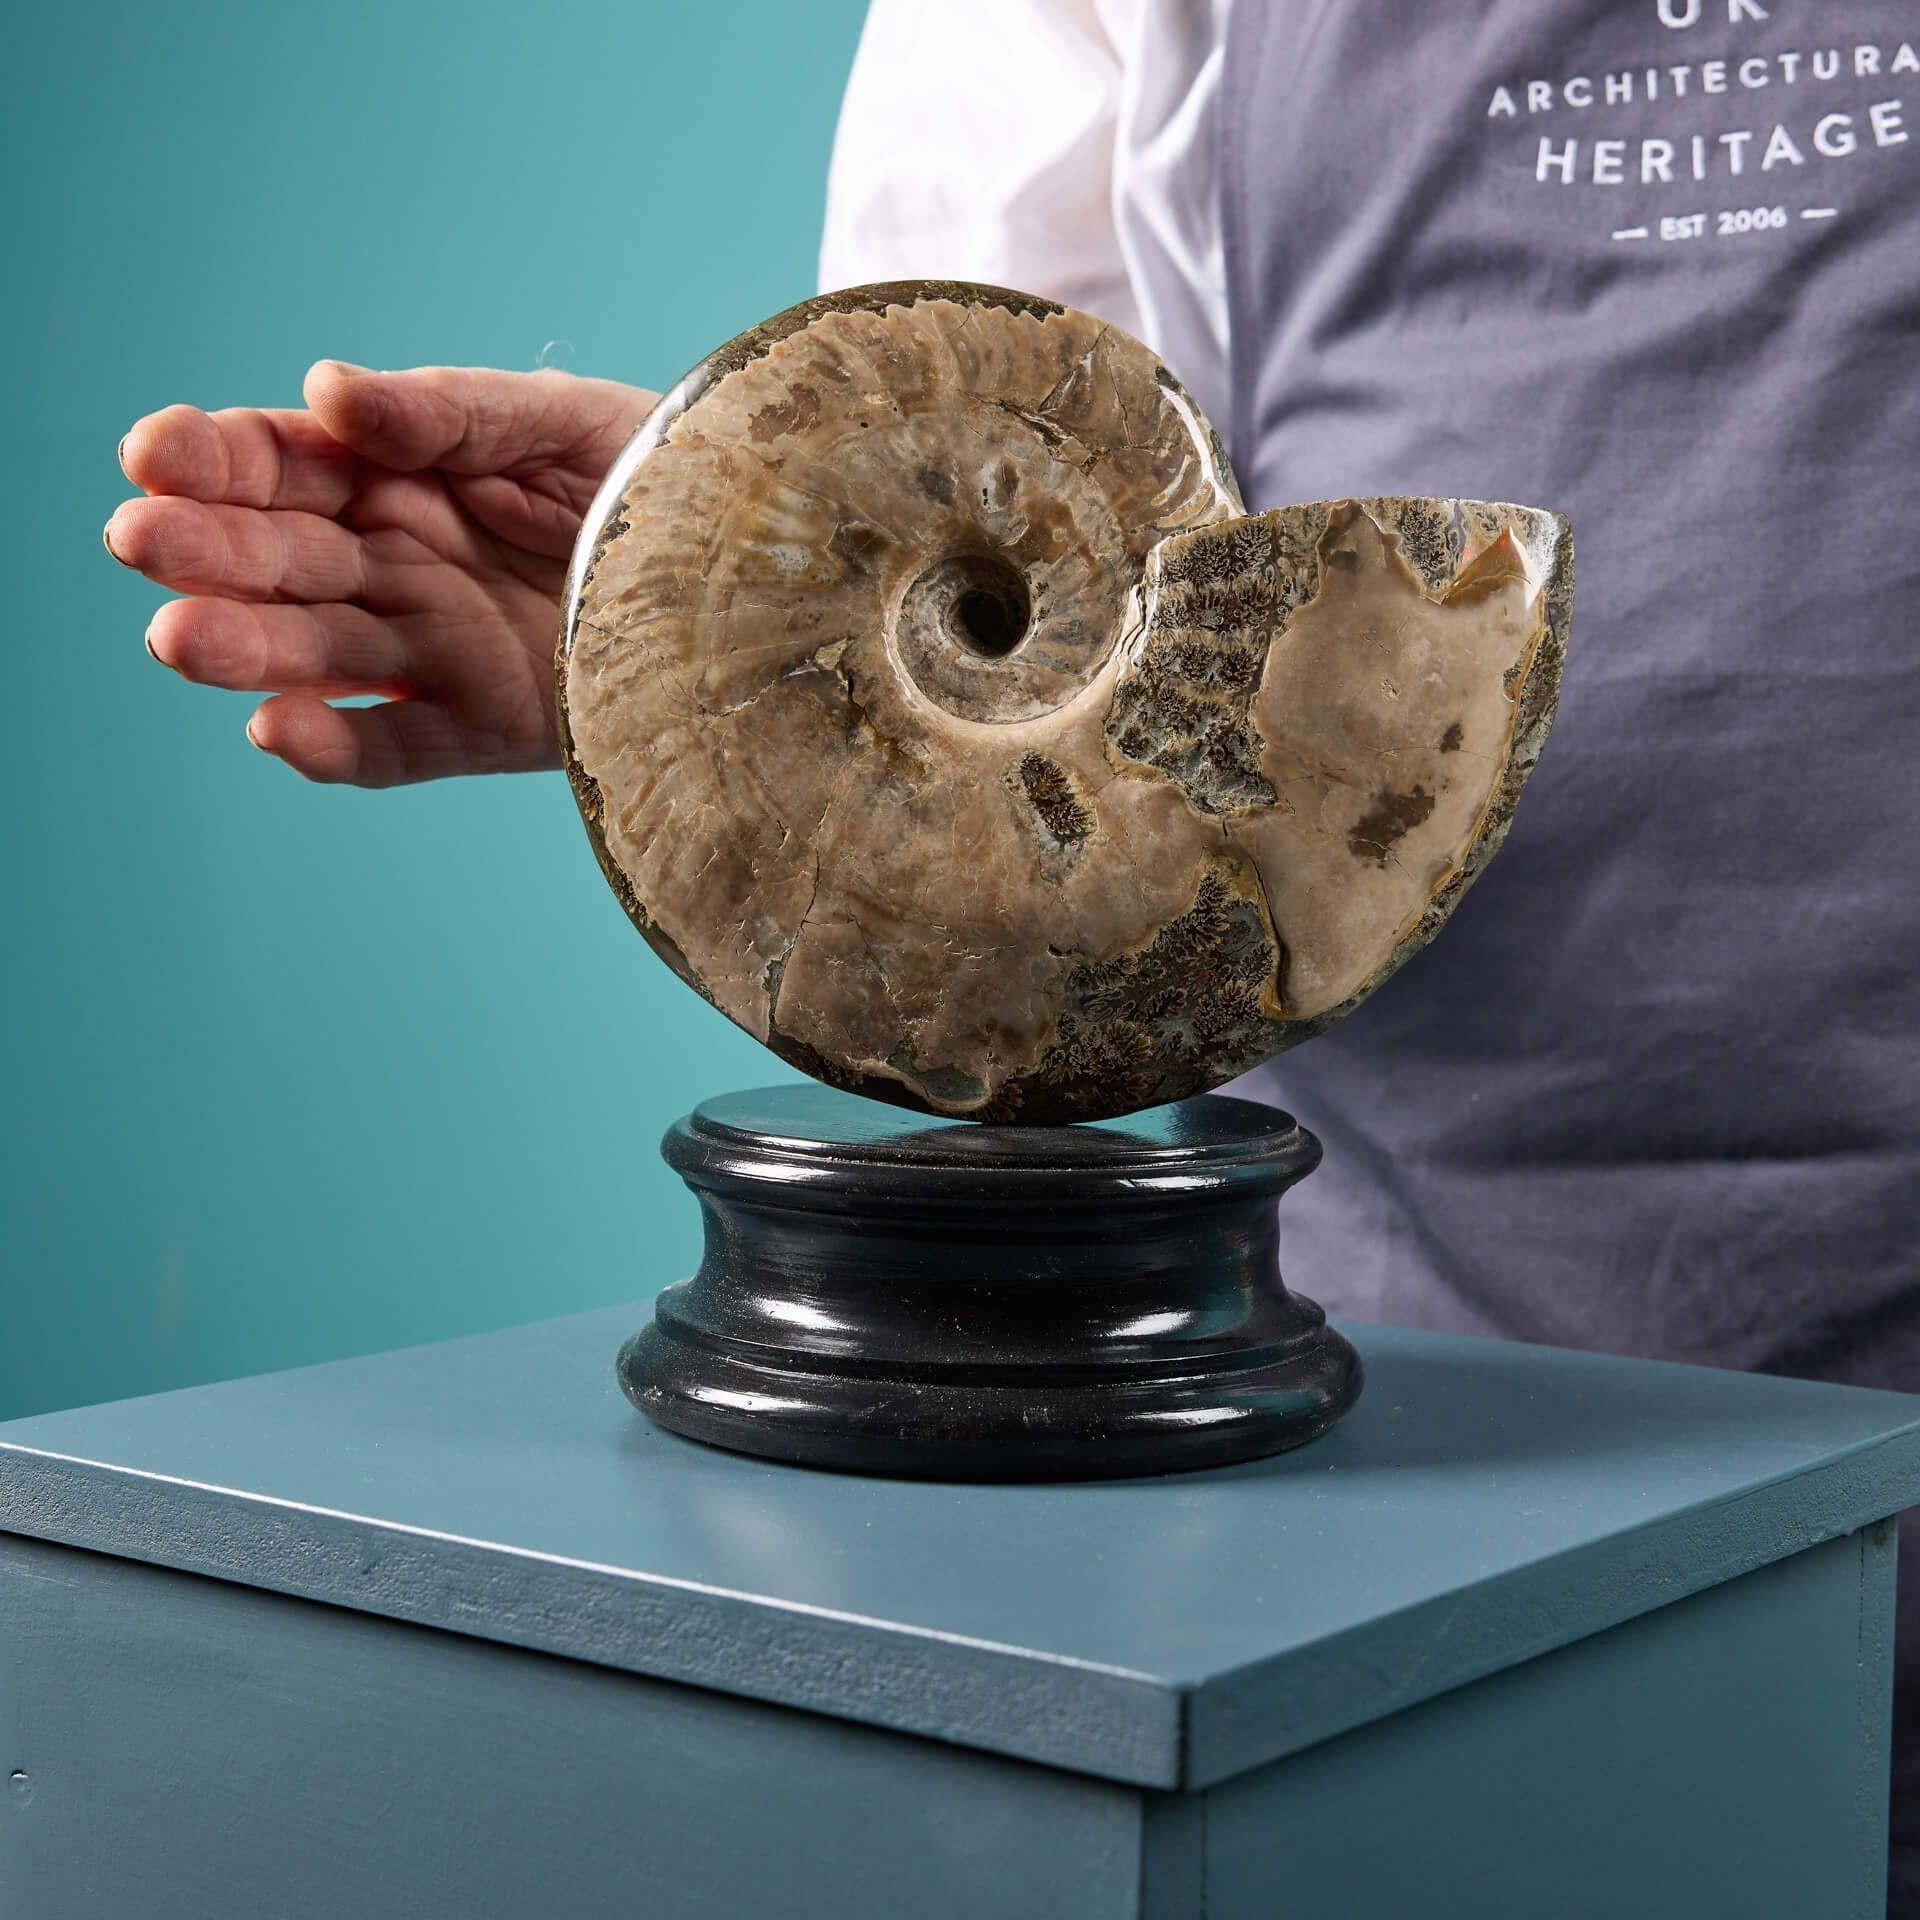 opalised ammonite fossil